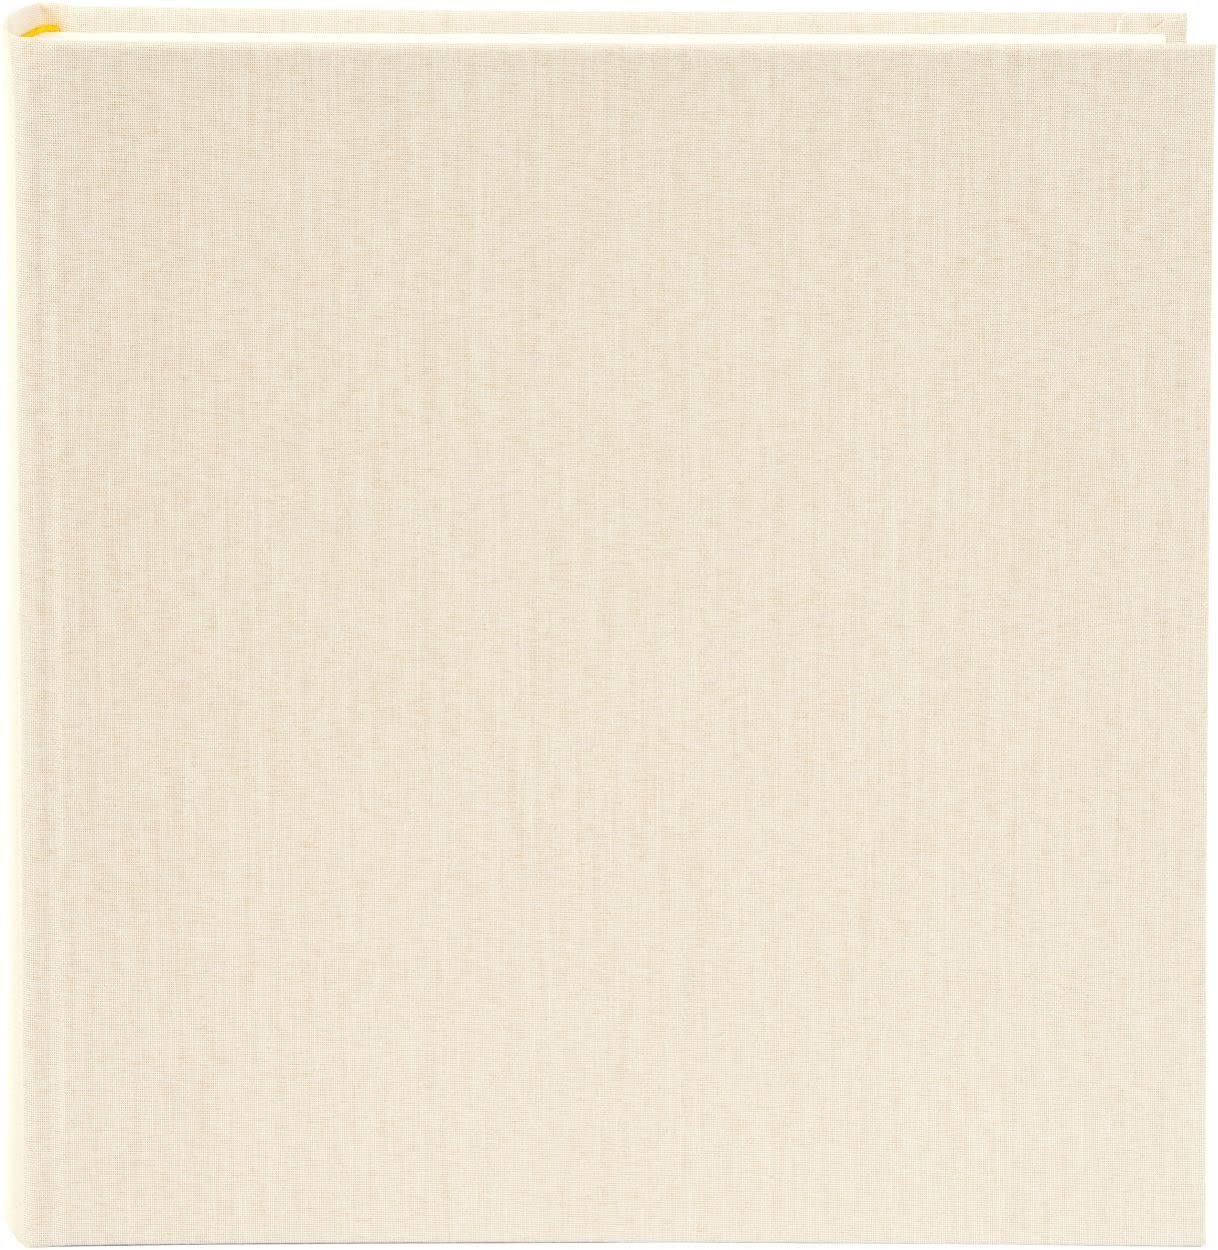 Goldbuch Jumbo-Fotoalbum Clean Ocean beige 30x31 cm 100 weiße Seiten